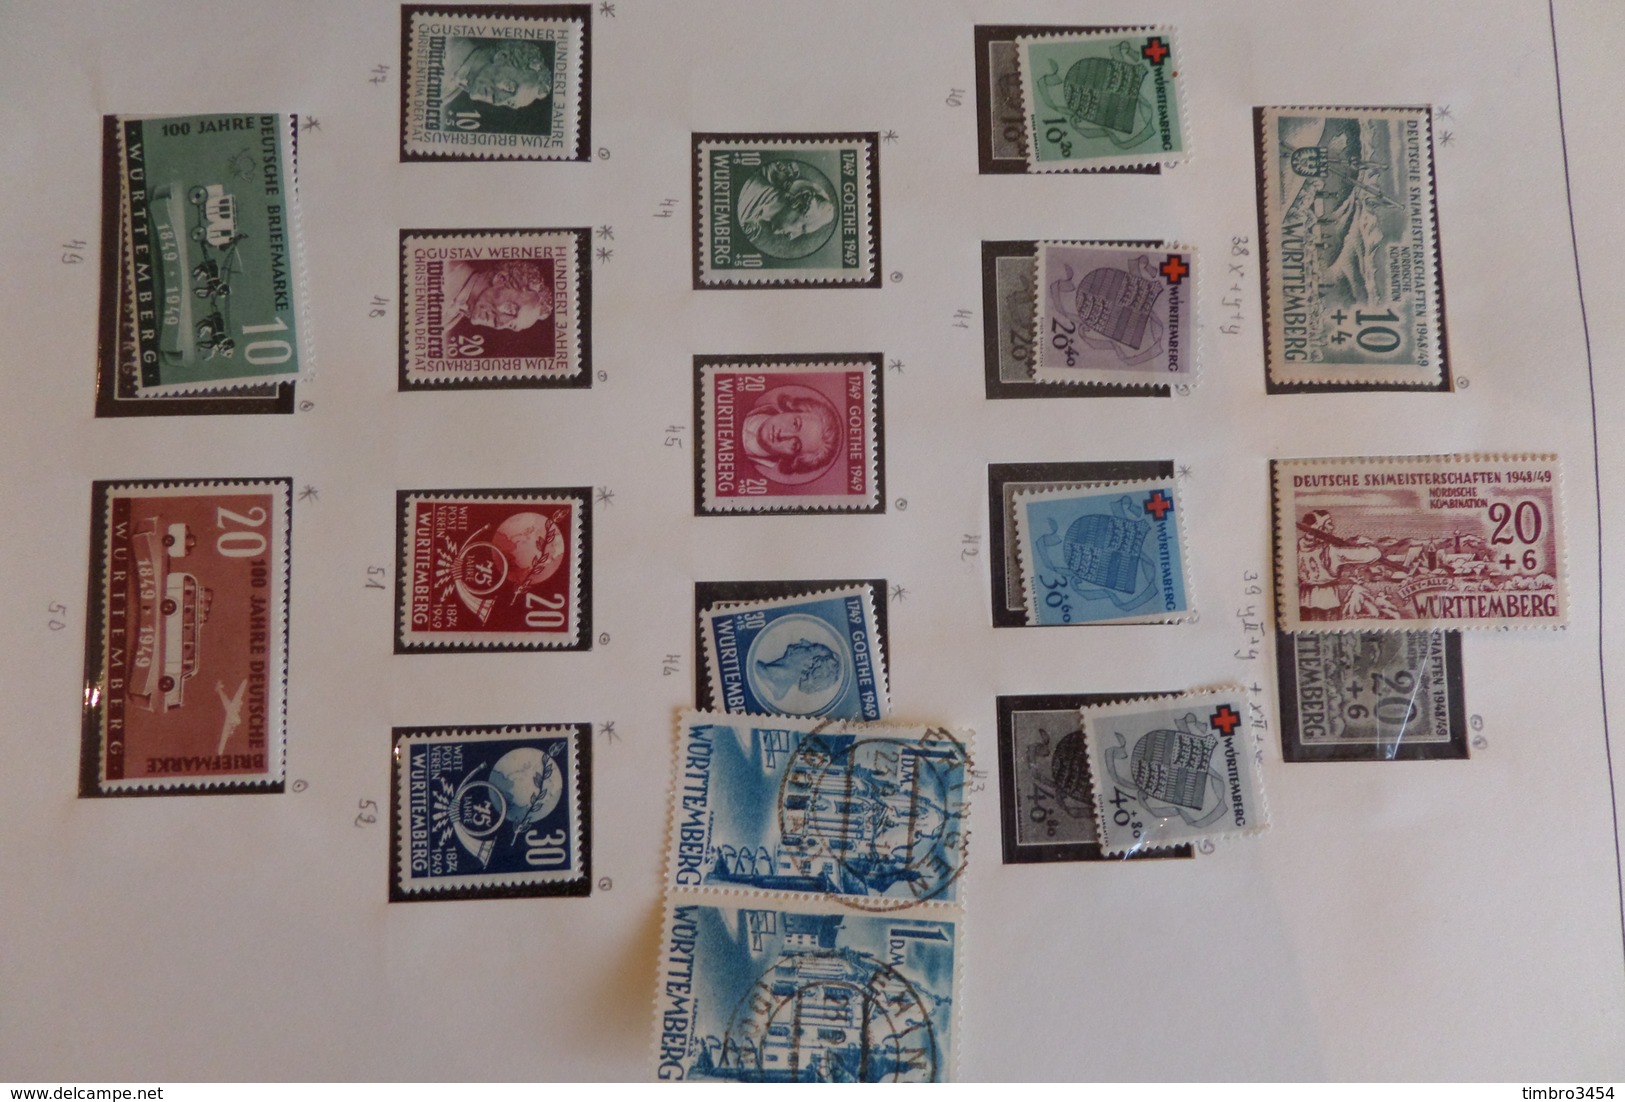 Superbe vrac de milliers de timbres tous pays. Anciens, collections, bonnes valeurs, très varié. Cote énorme!! A saisir!